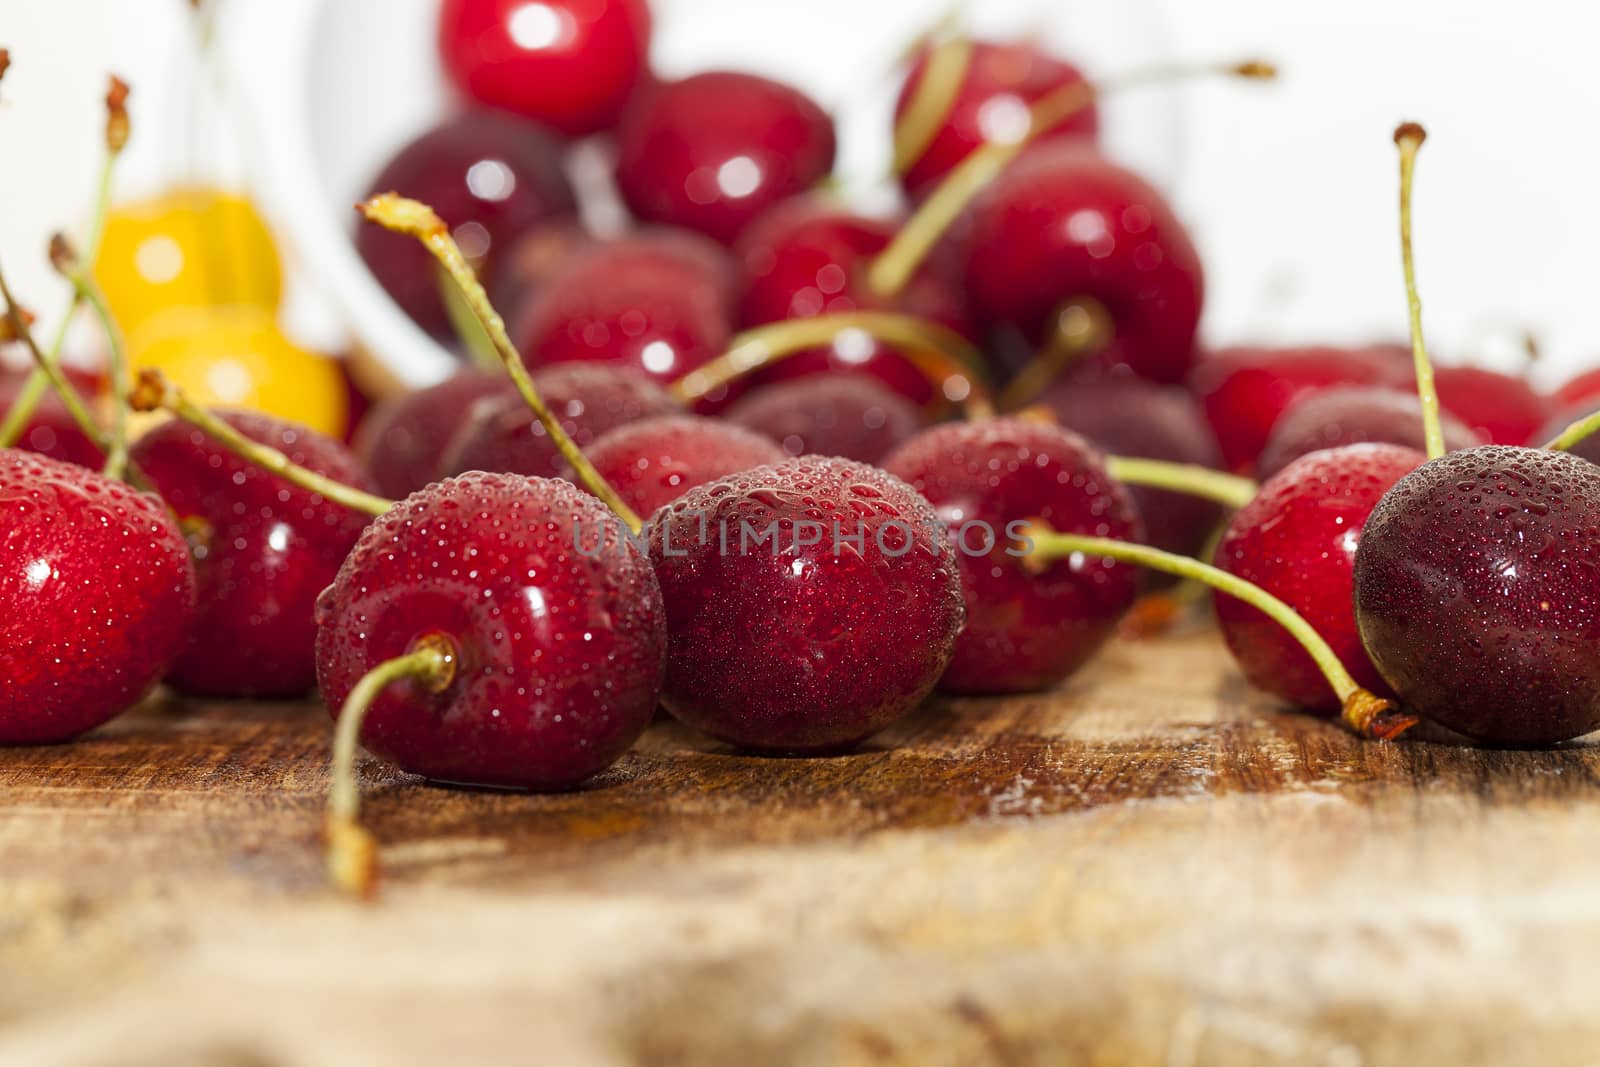 juicy and ripe cherries by avq